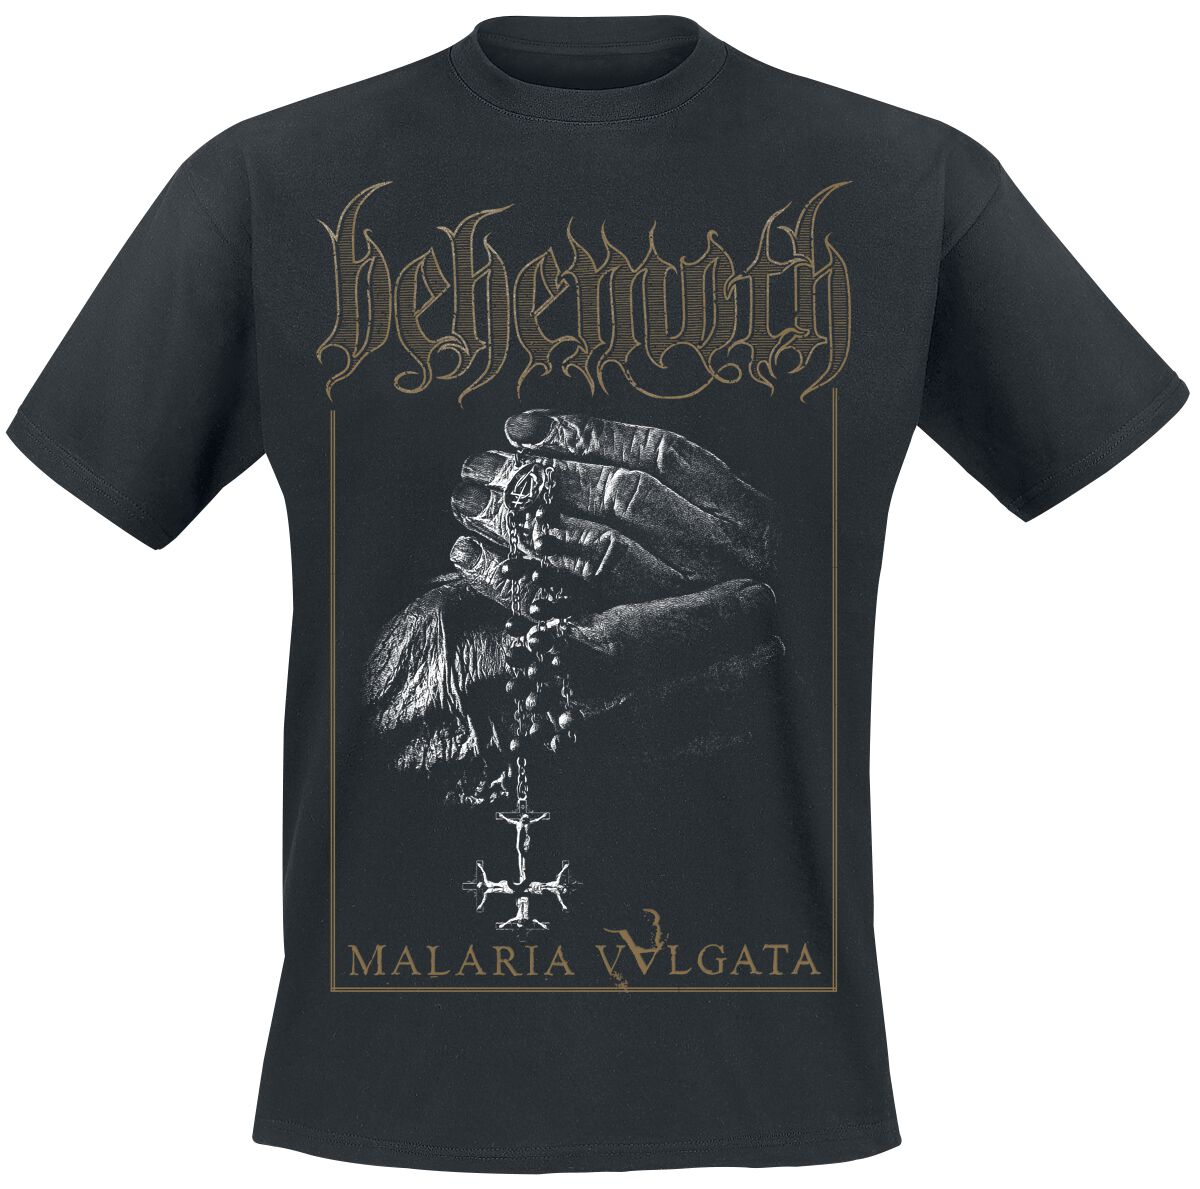 Behemoth T-Shirt - Malaria Vvlgata - S bis XXL - für Männer - Größe XXL - schwarz  - Lizenziertes Merchandise!